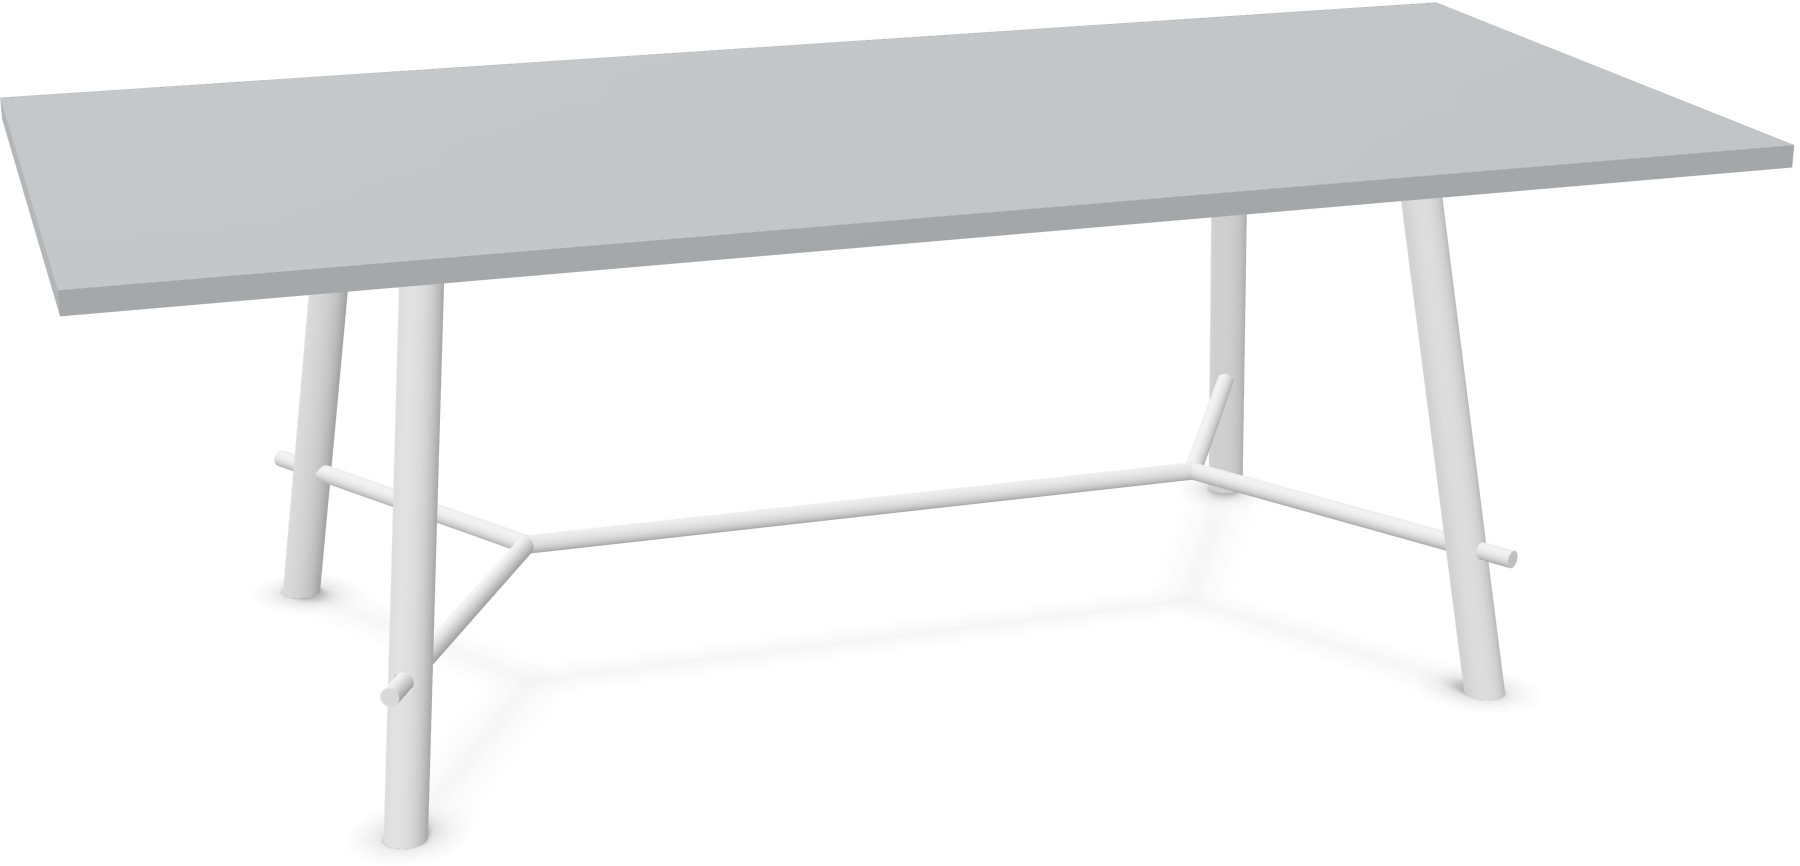 Record Living Maxi Tisch in Hellgrau / Eiche weiss präsentiert im Onlineshop von KAQTU Design AG. Esstisch ist von Infiniti Design